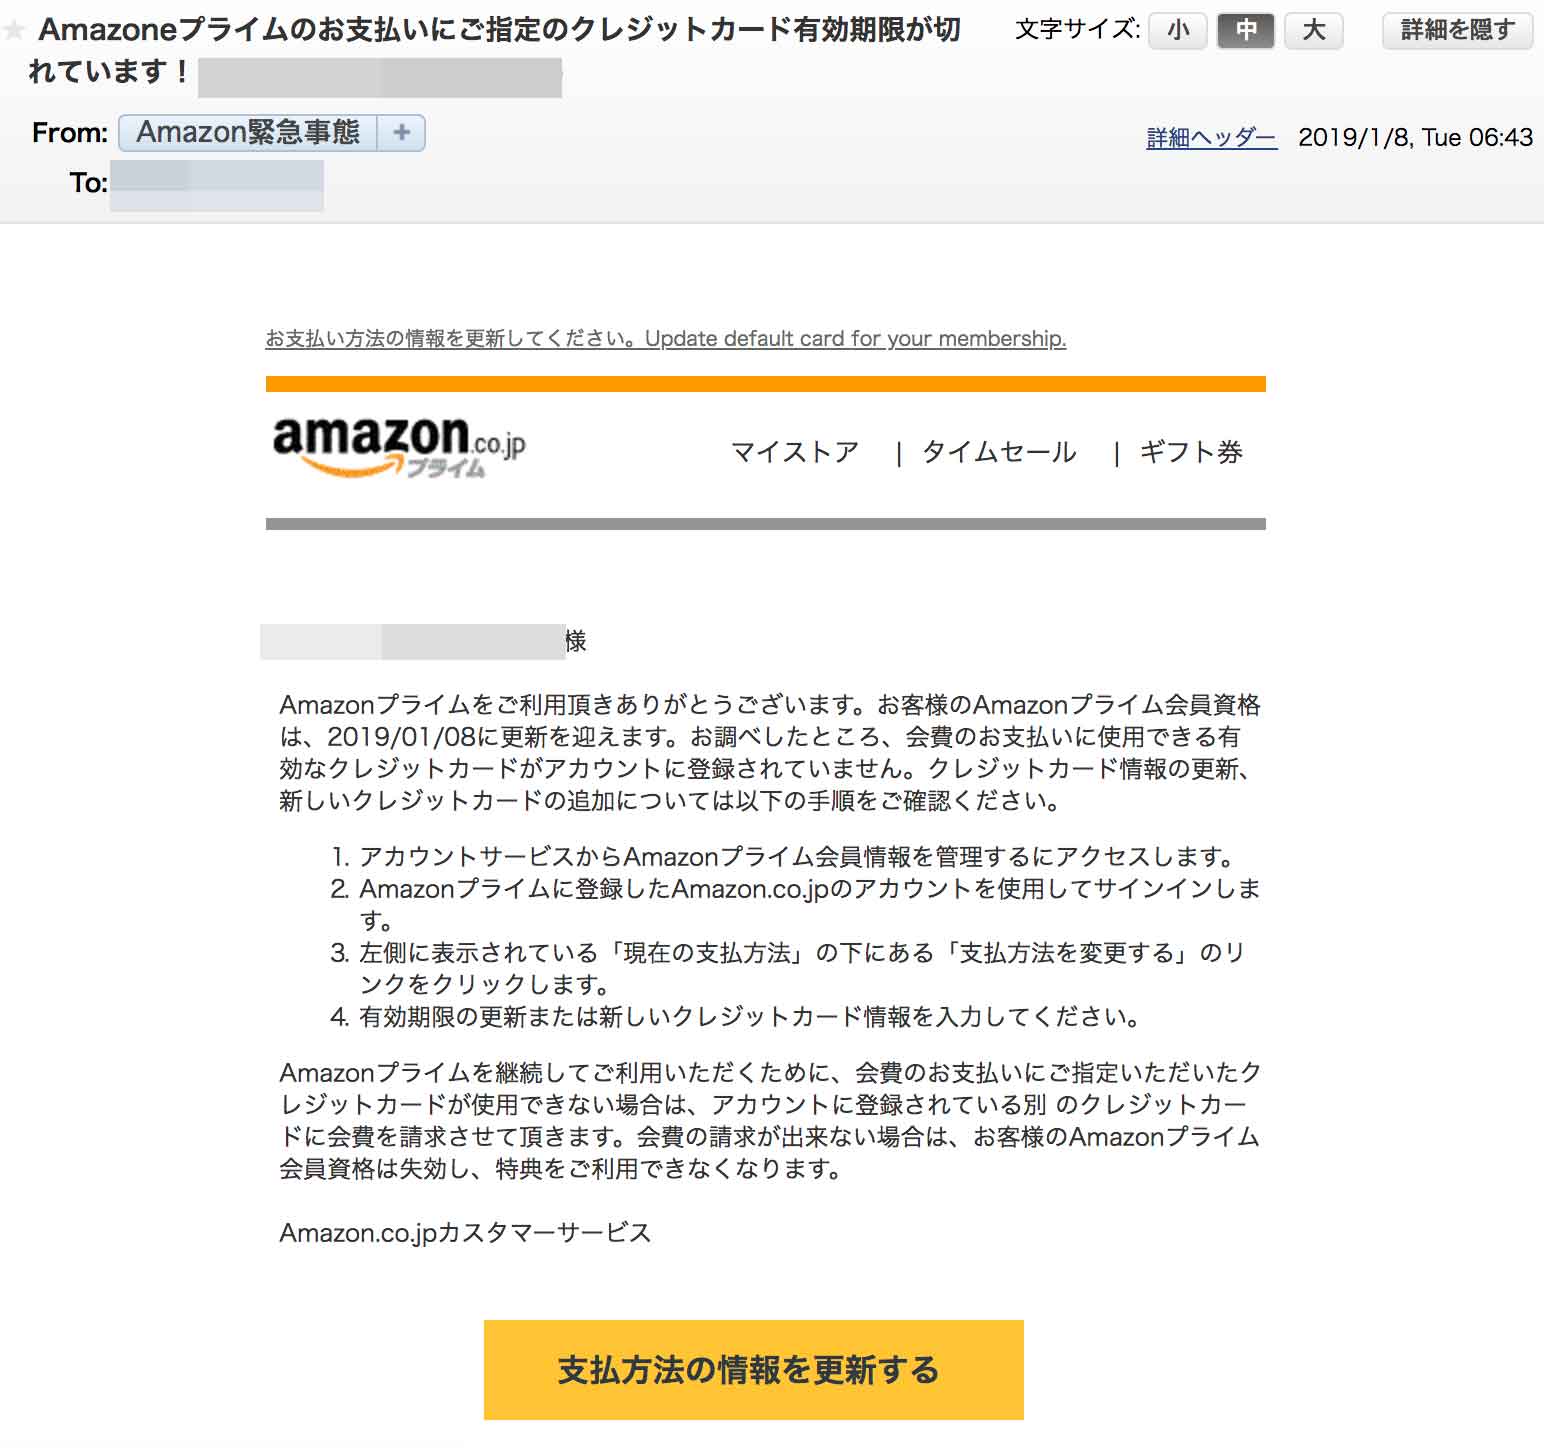 Amazon Appleサポート詐欺メールに注意 カード情報 Id入力は絶対ng